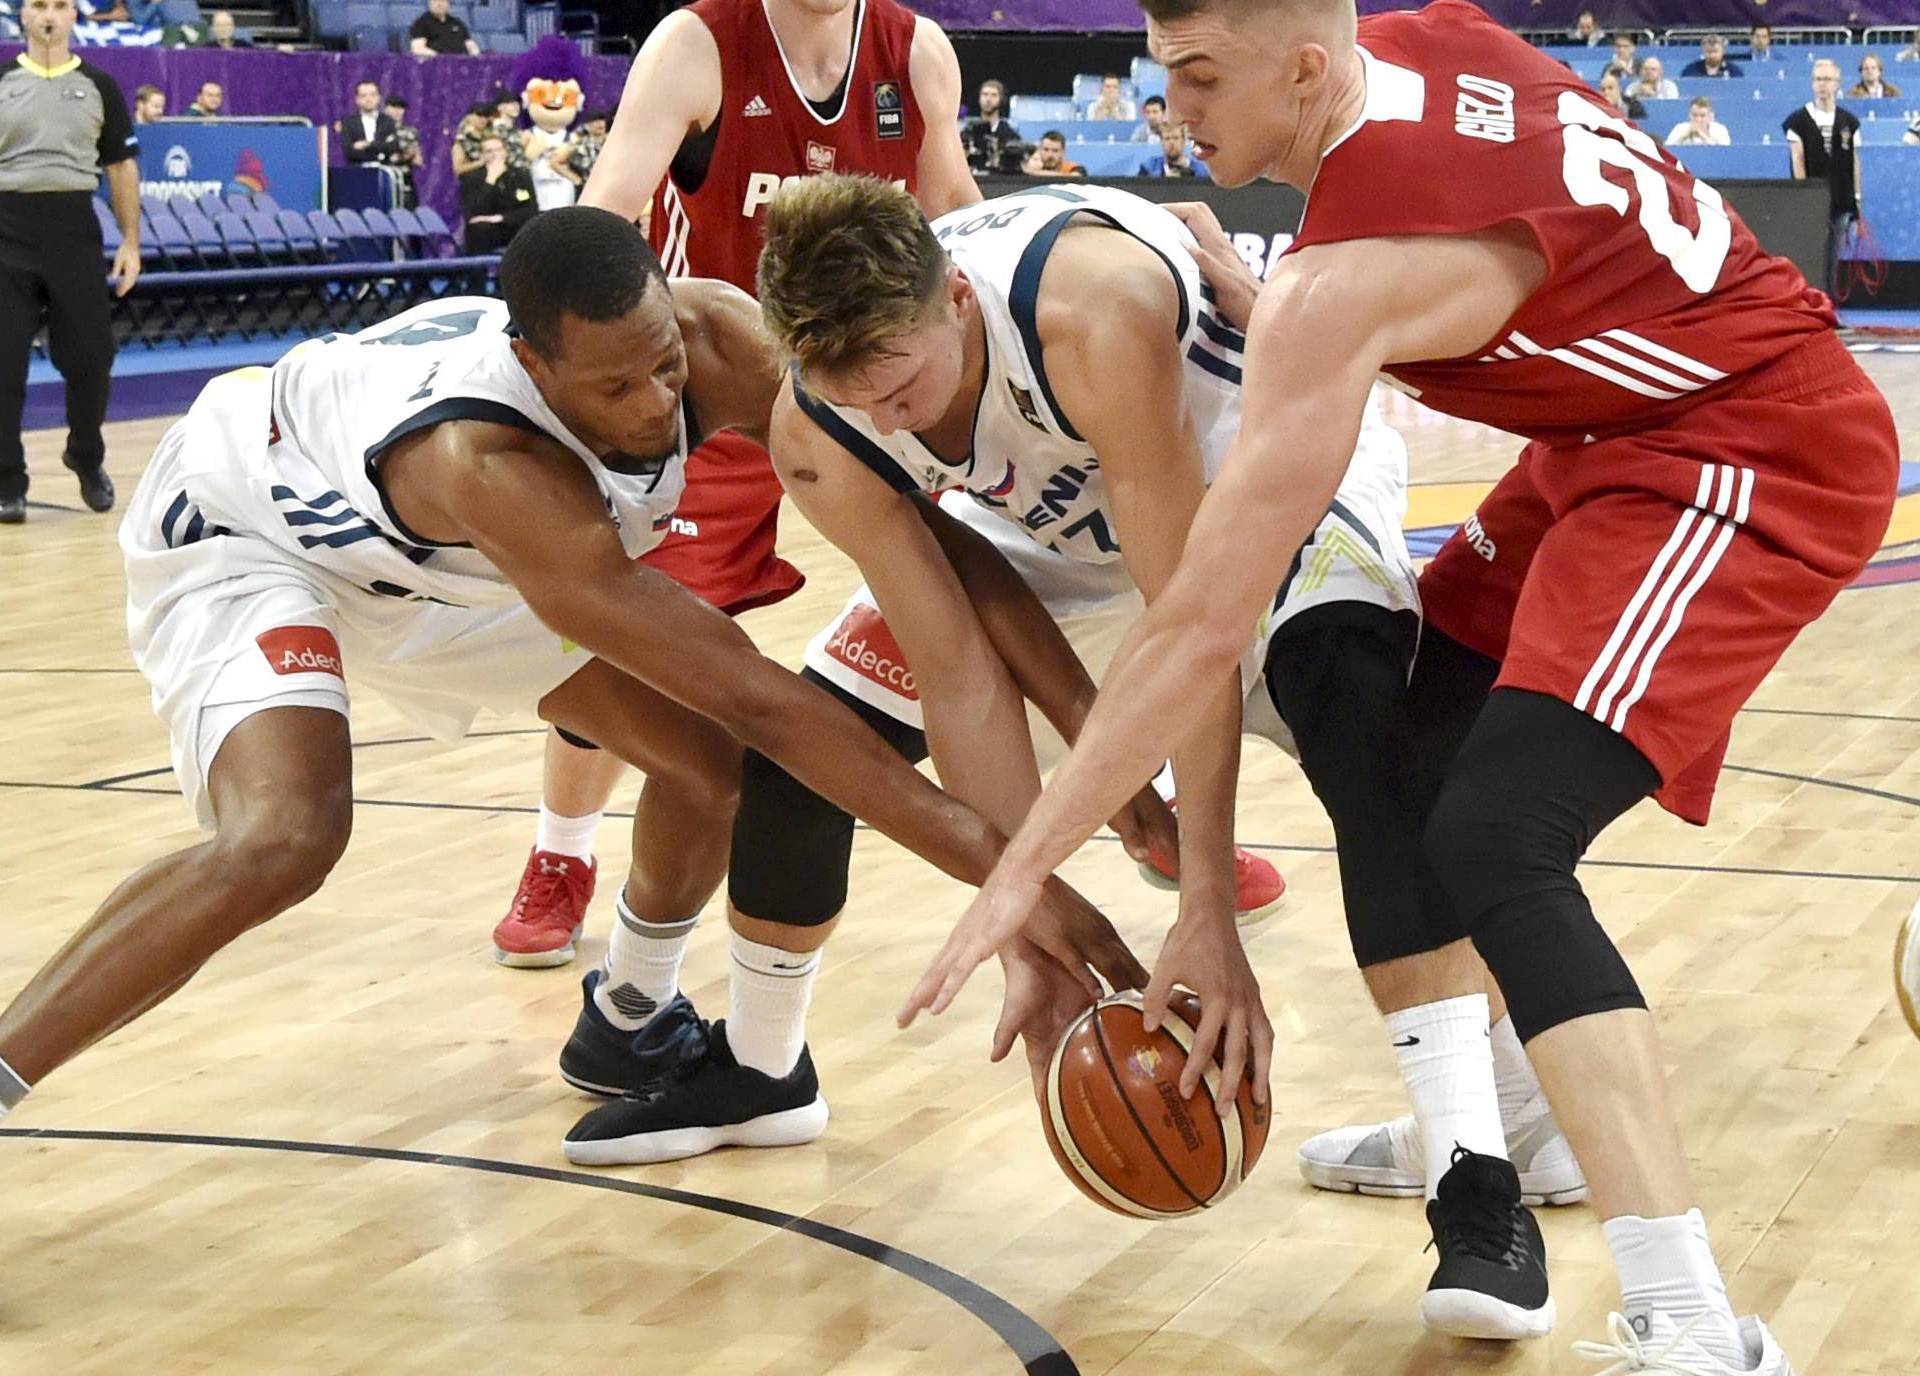 Basketball - Poland vs Slovenia - European Championships EuroBasket 2017 Qualification Round